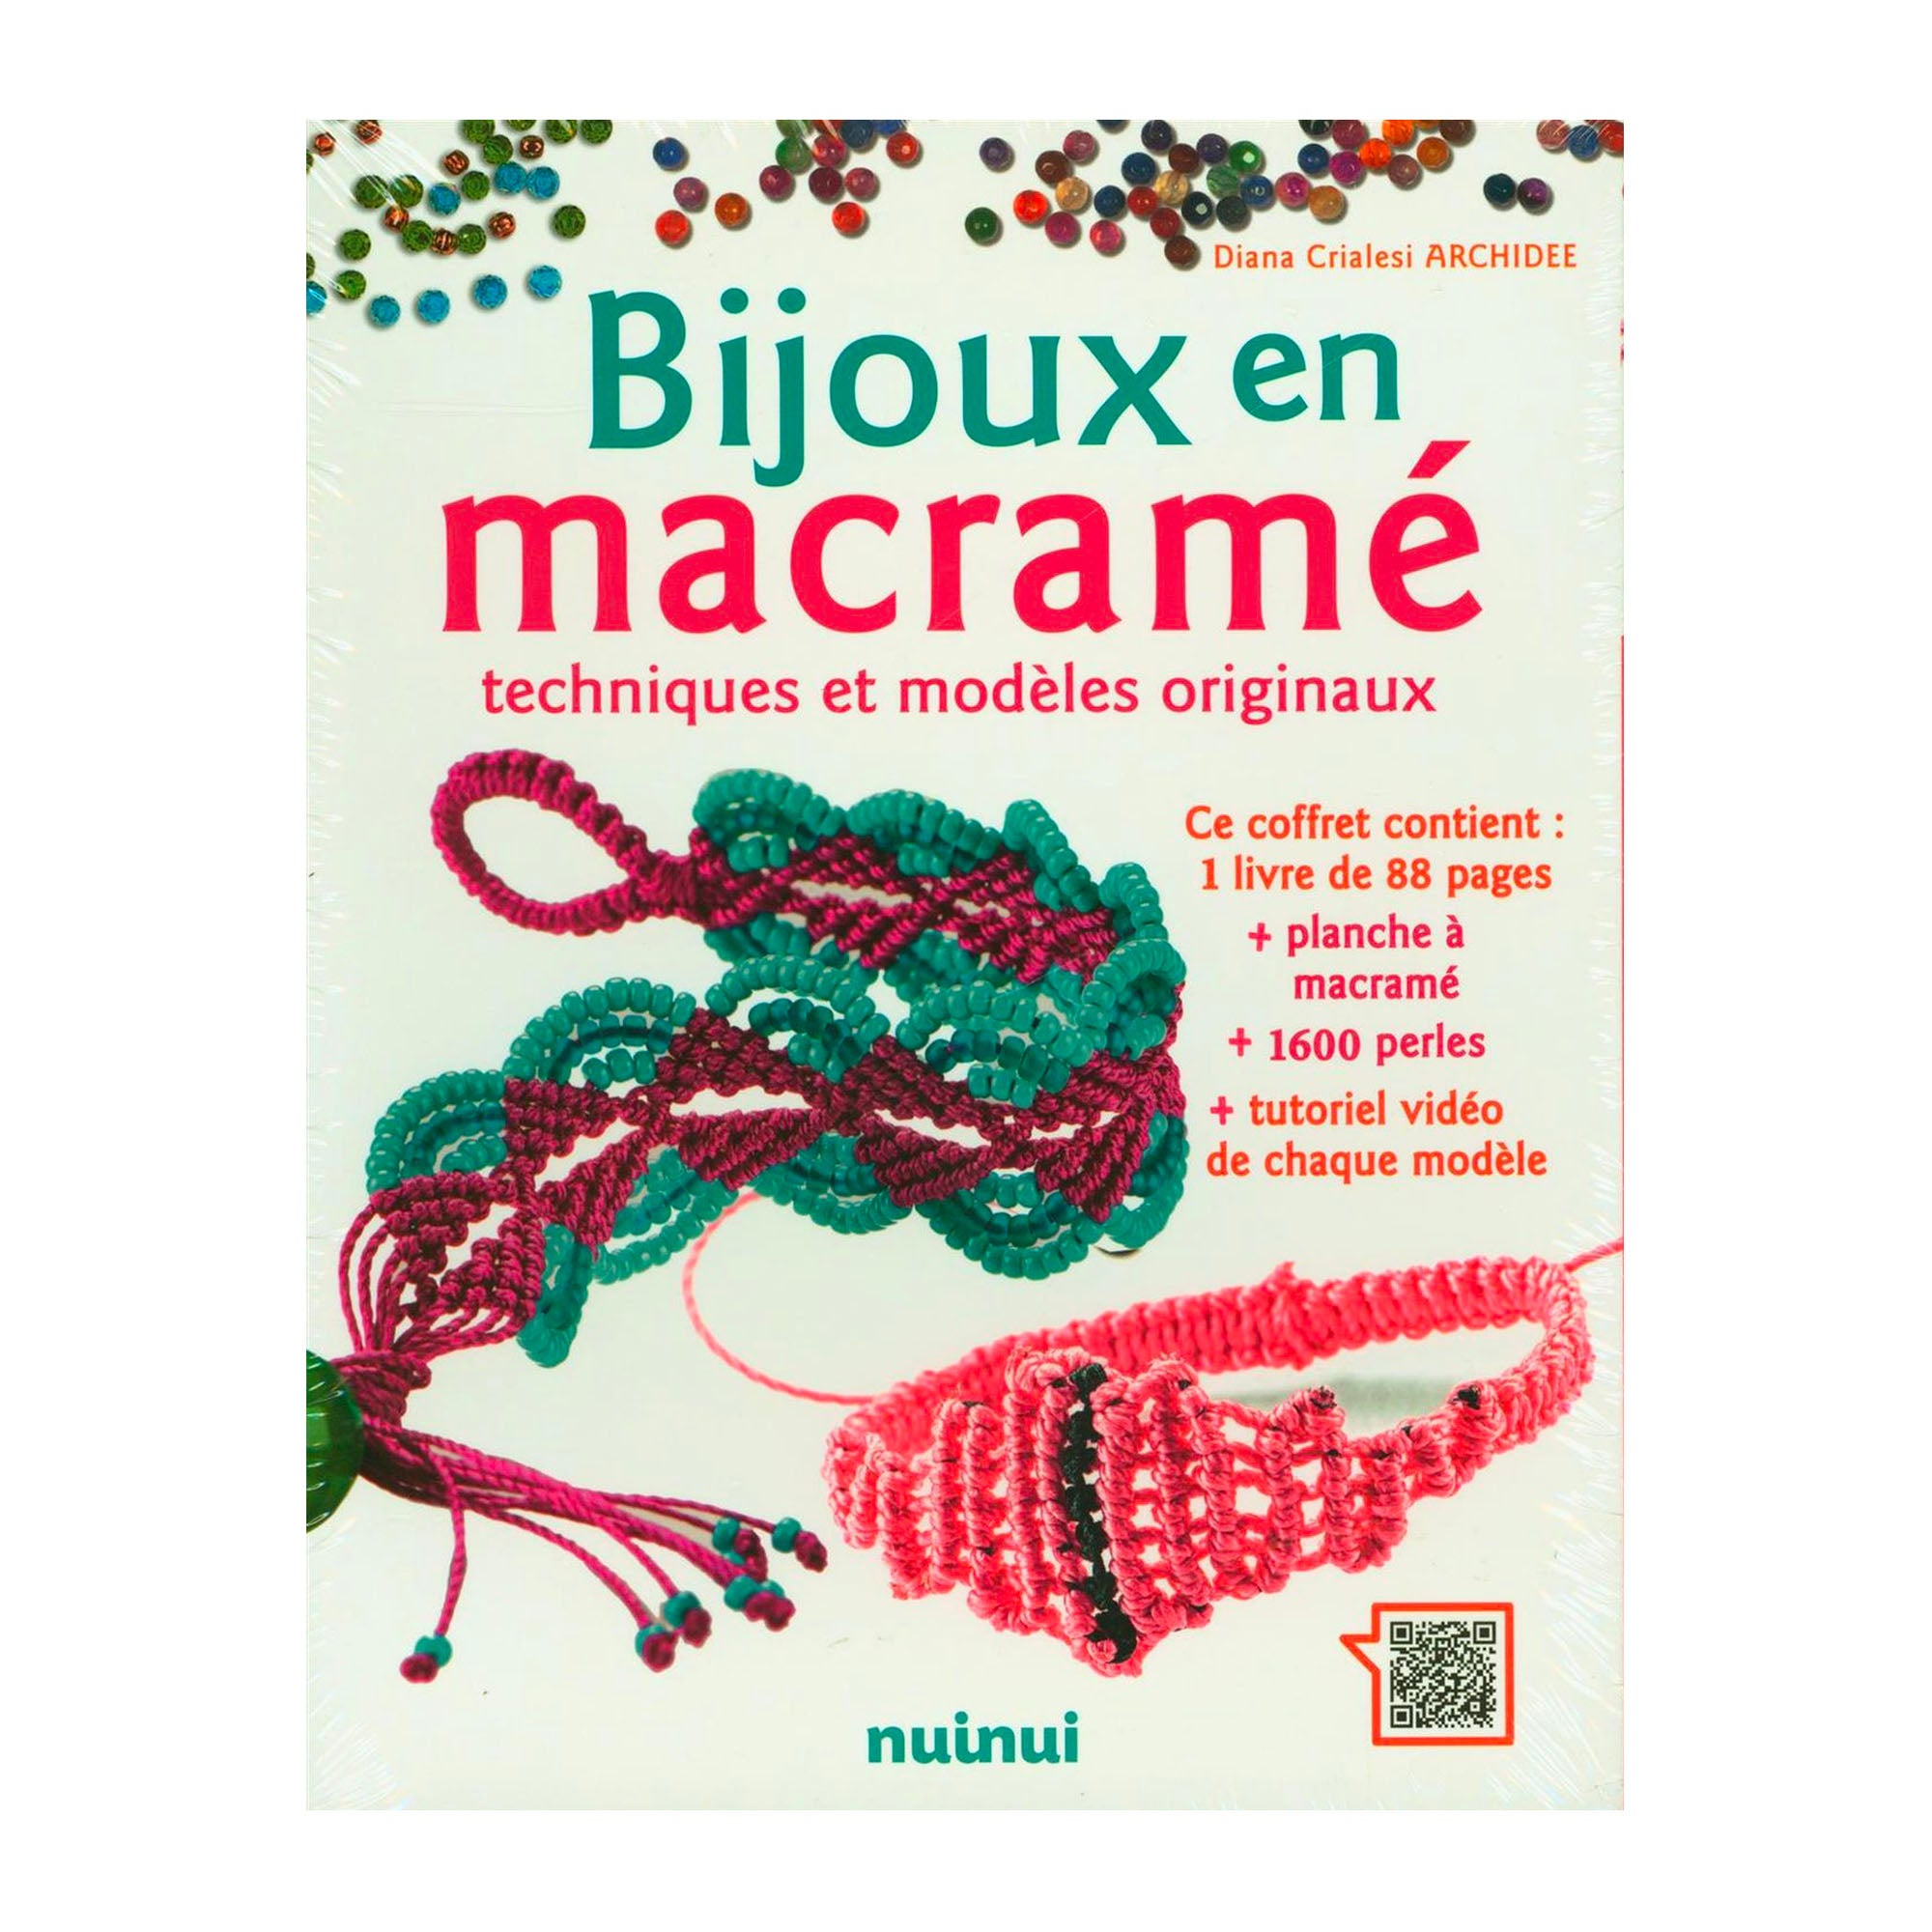 Planche Macramé - Atelier Macramé